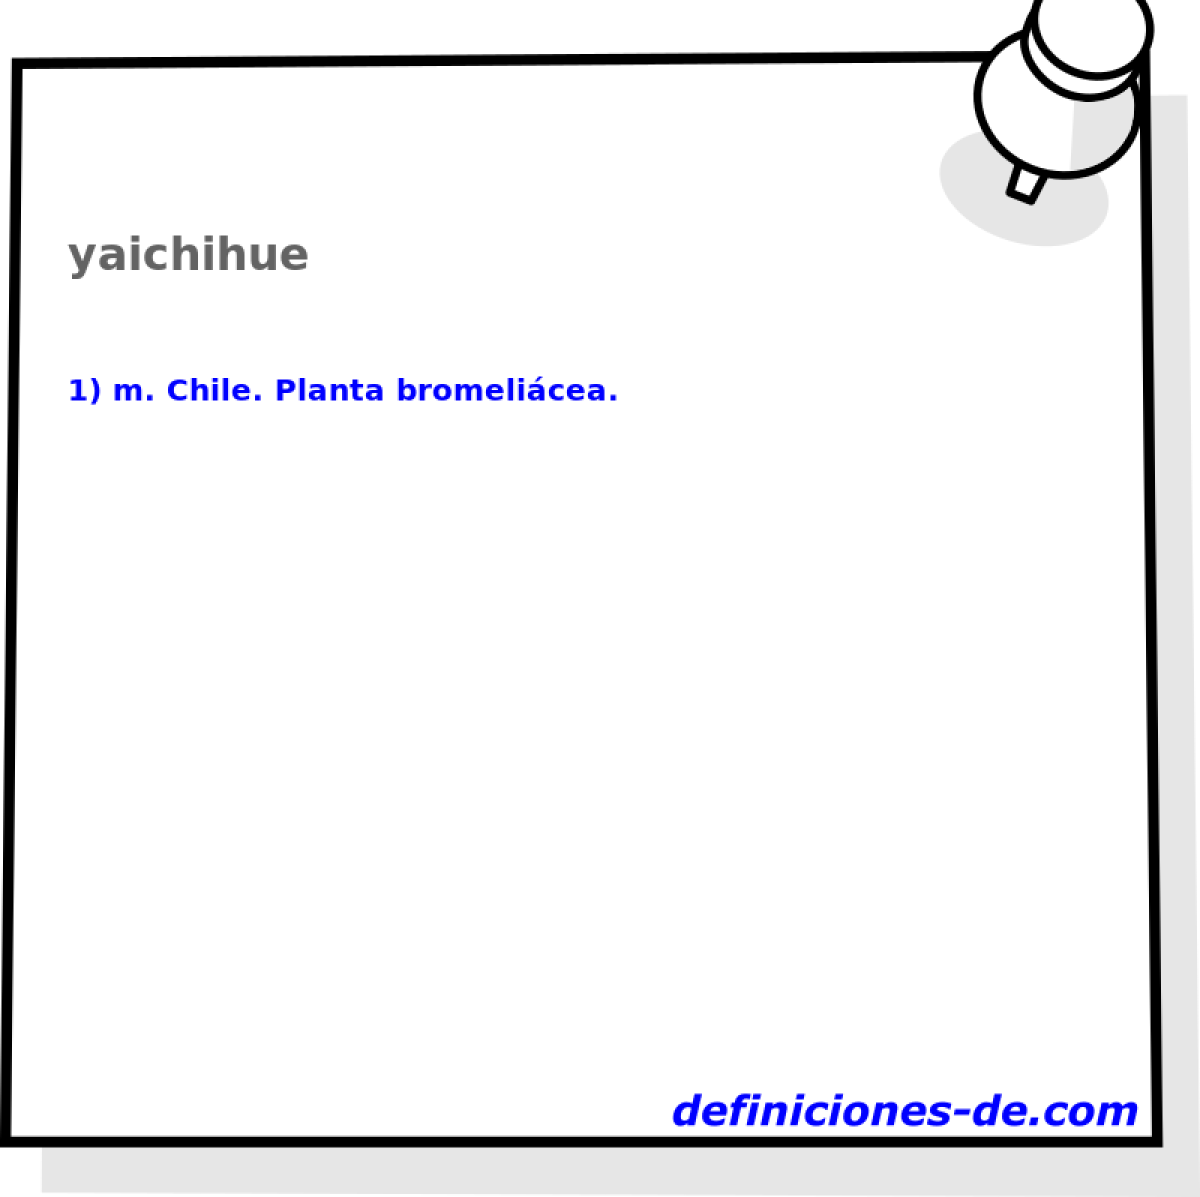 yaichihue 